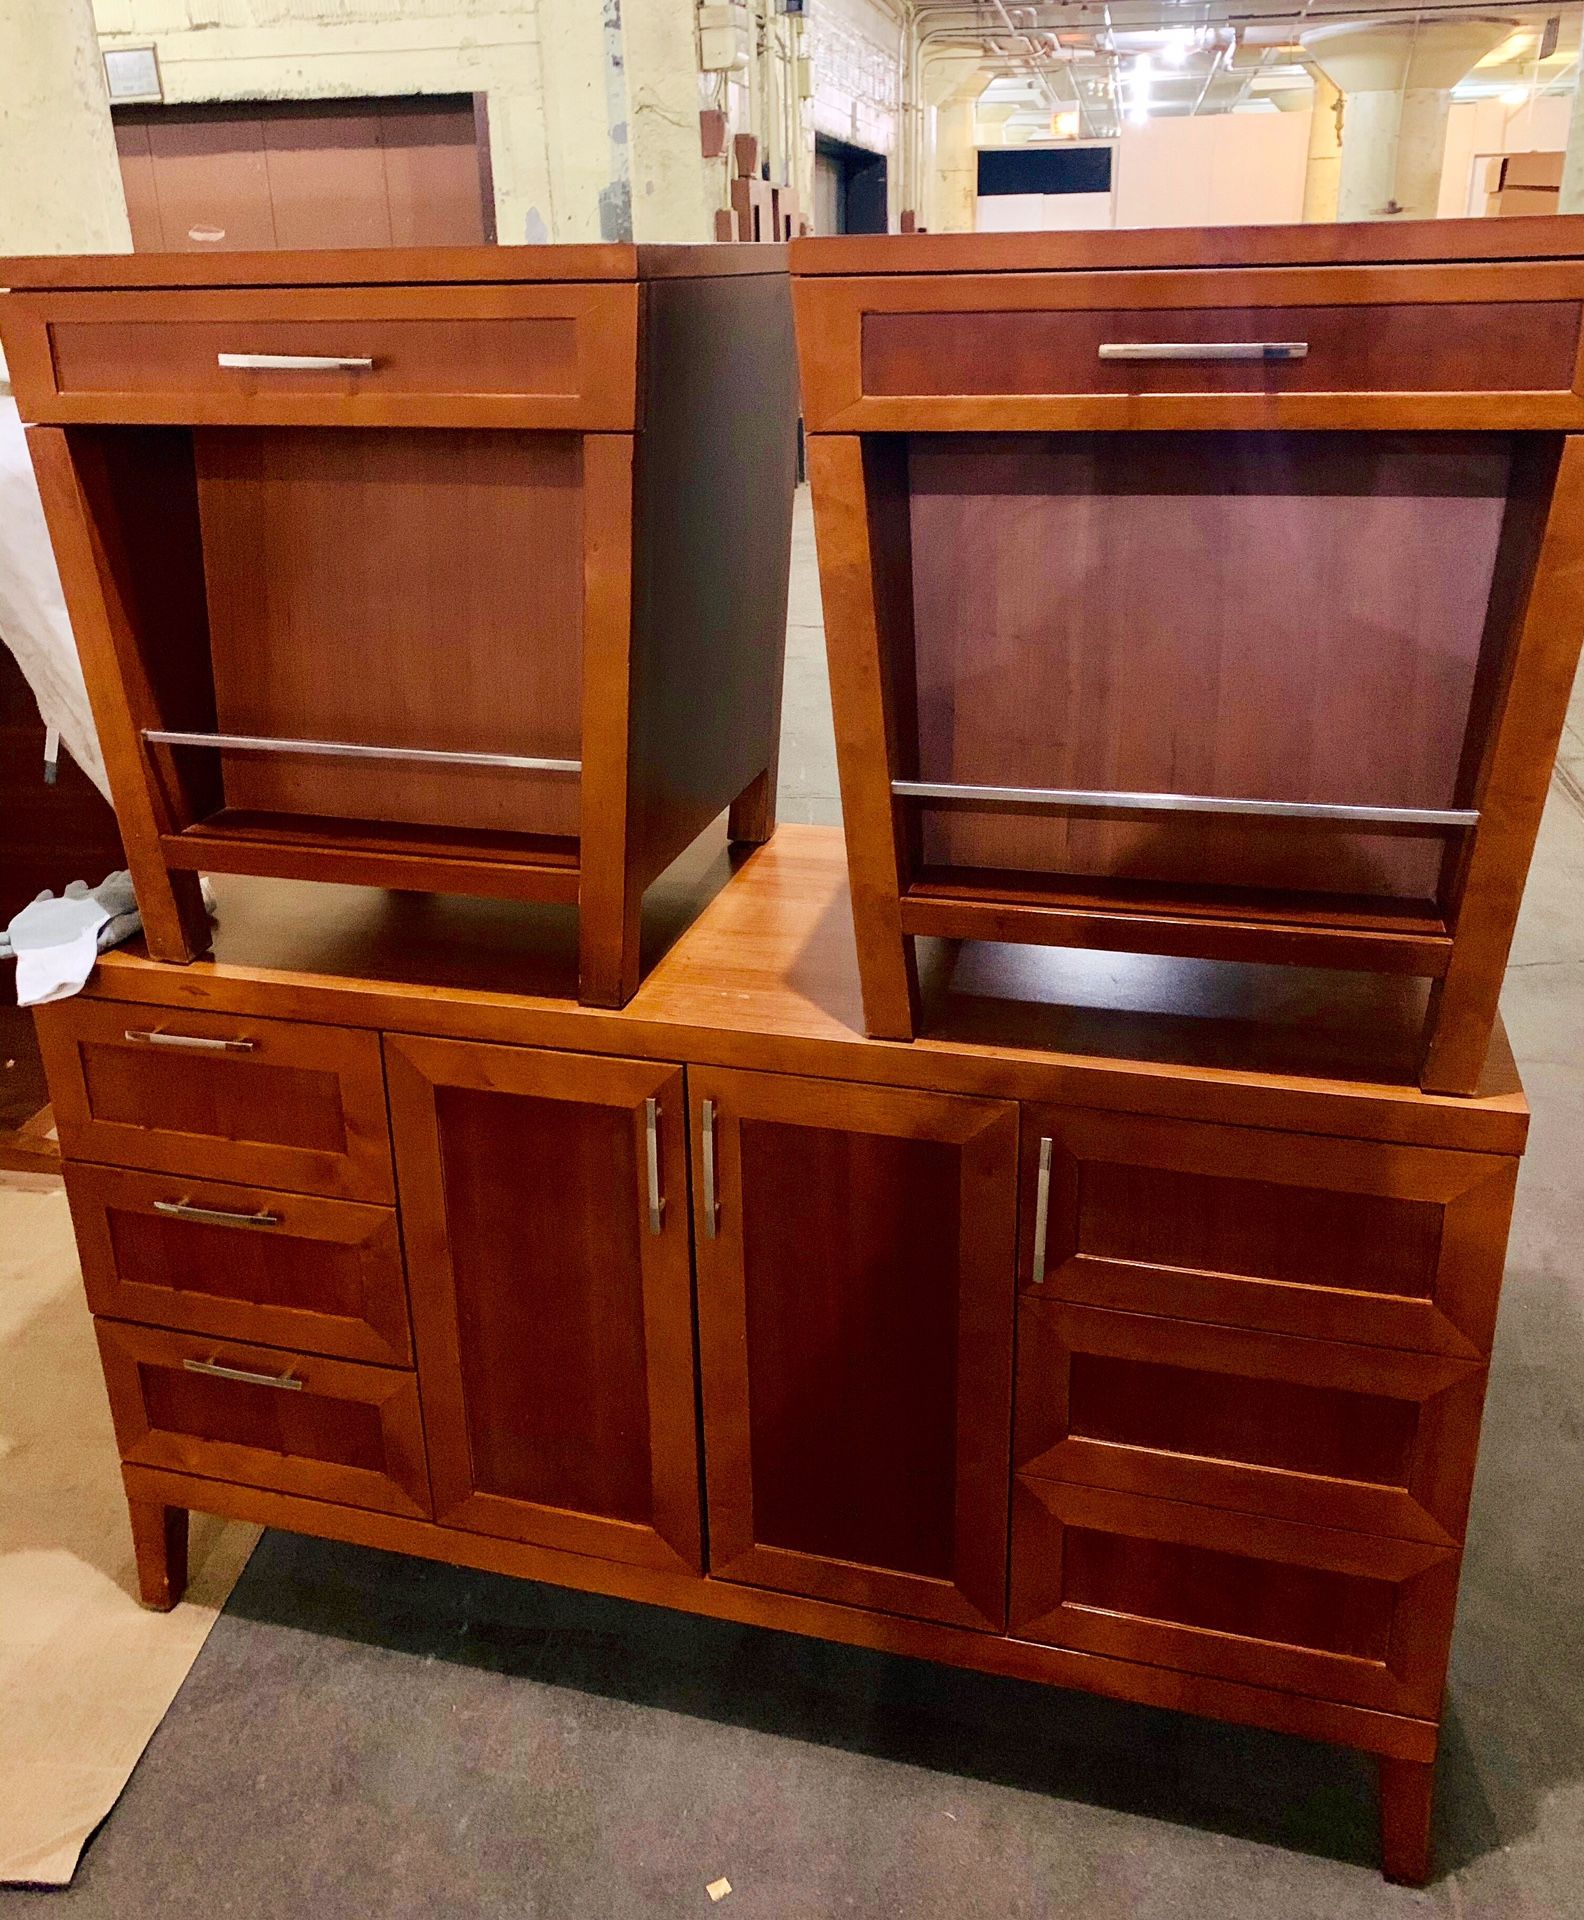 Dresser & nightstands- $60